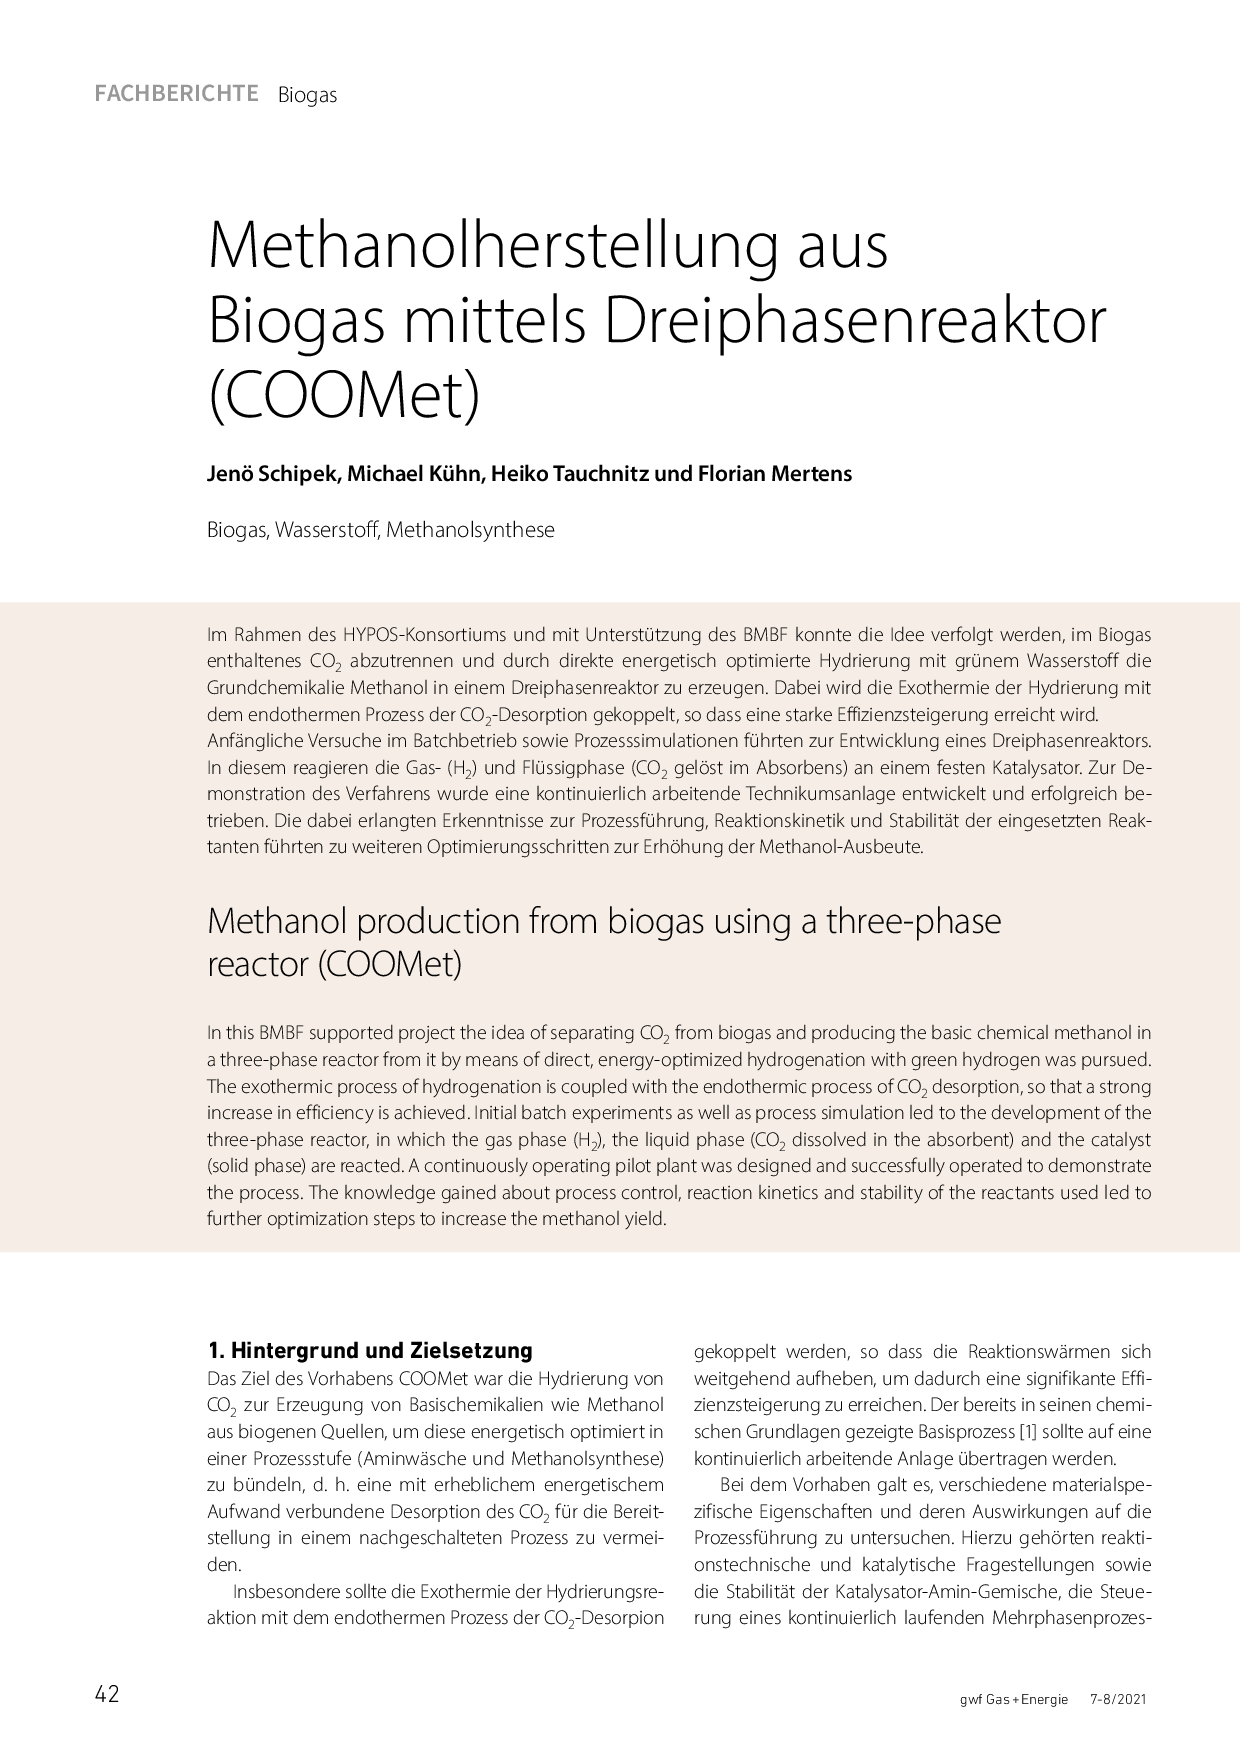 Methanolherstellung aus Biogas mittels Dreiphasenreaktor (COOMet)